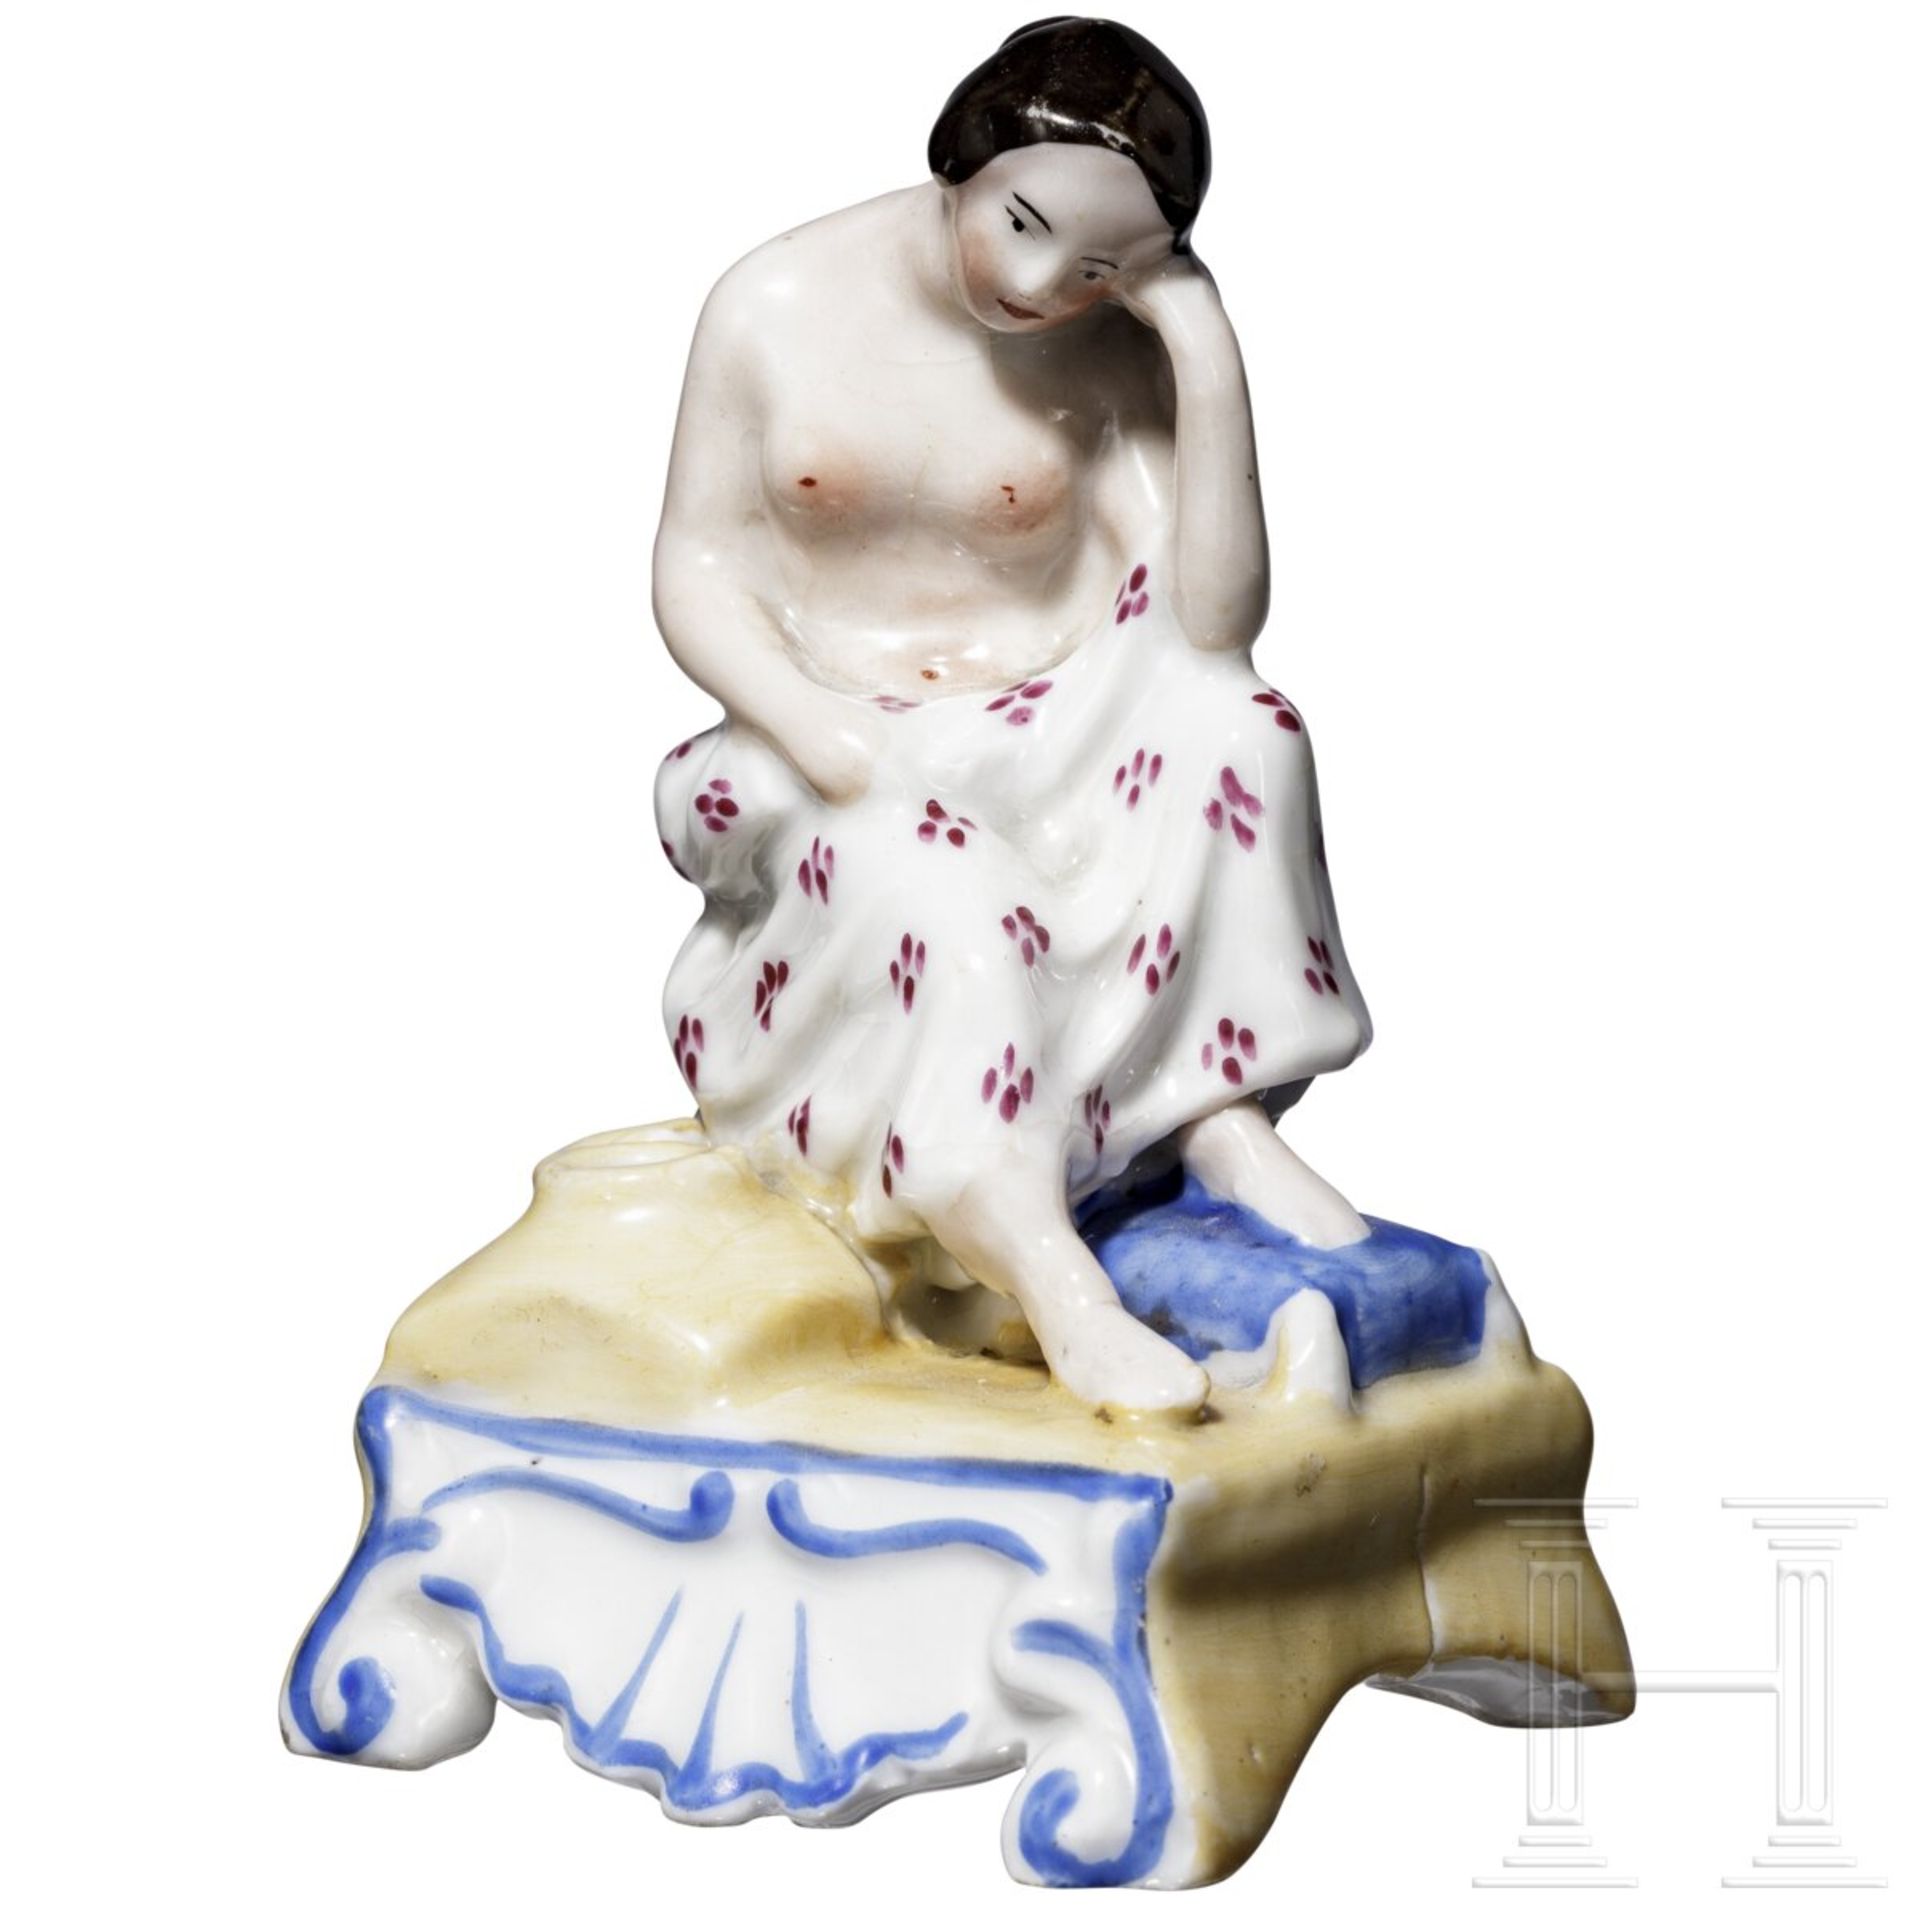 Erotische Porzellanfigur als Duftbehälter, russische Privatmanufaktur, Mitte 19. Jhdt.